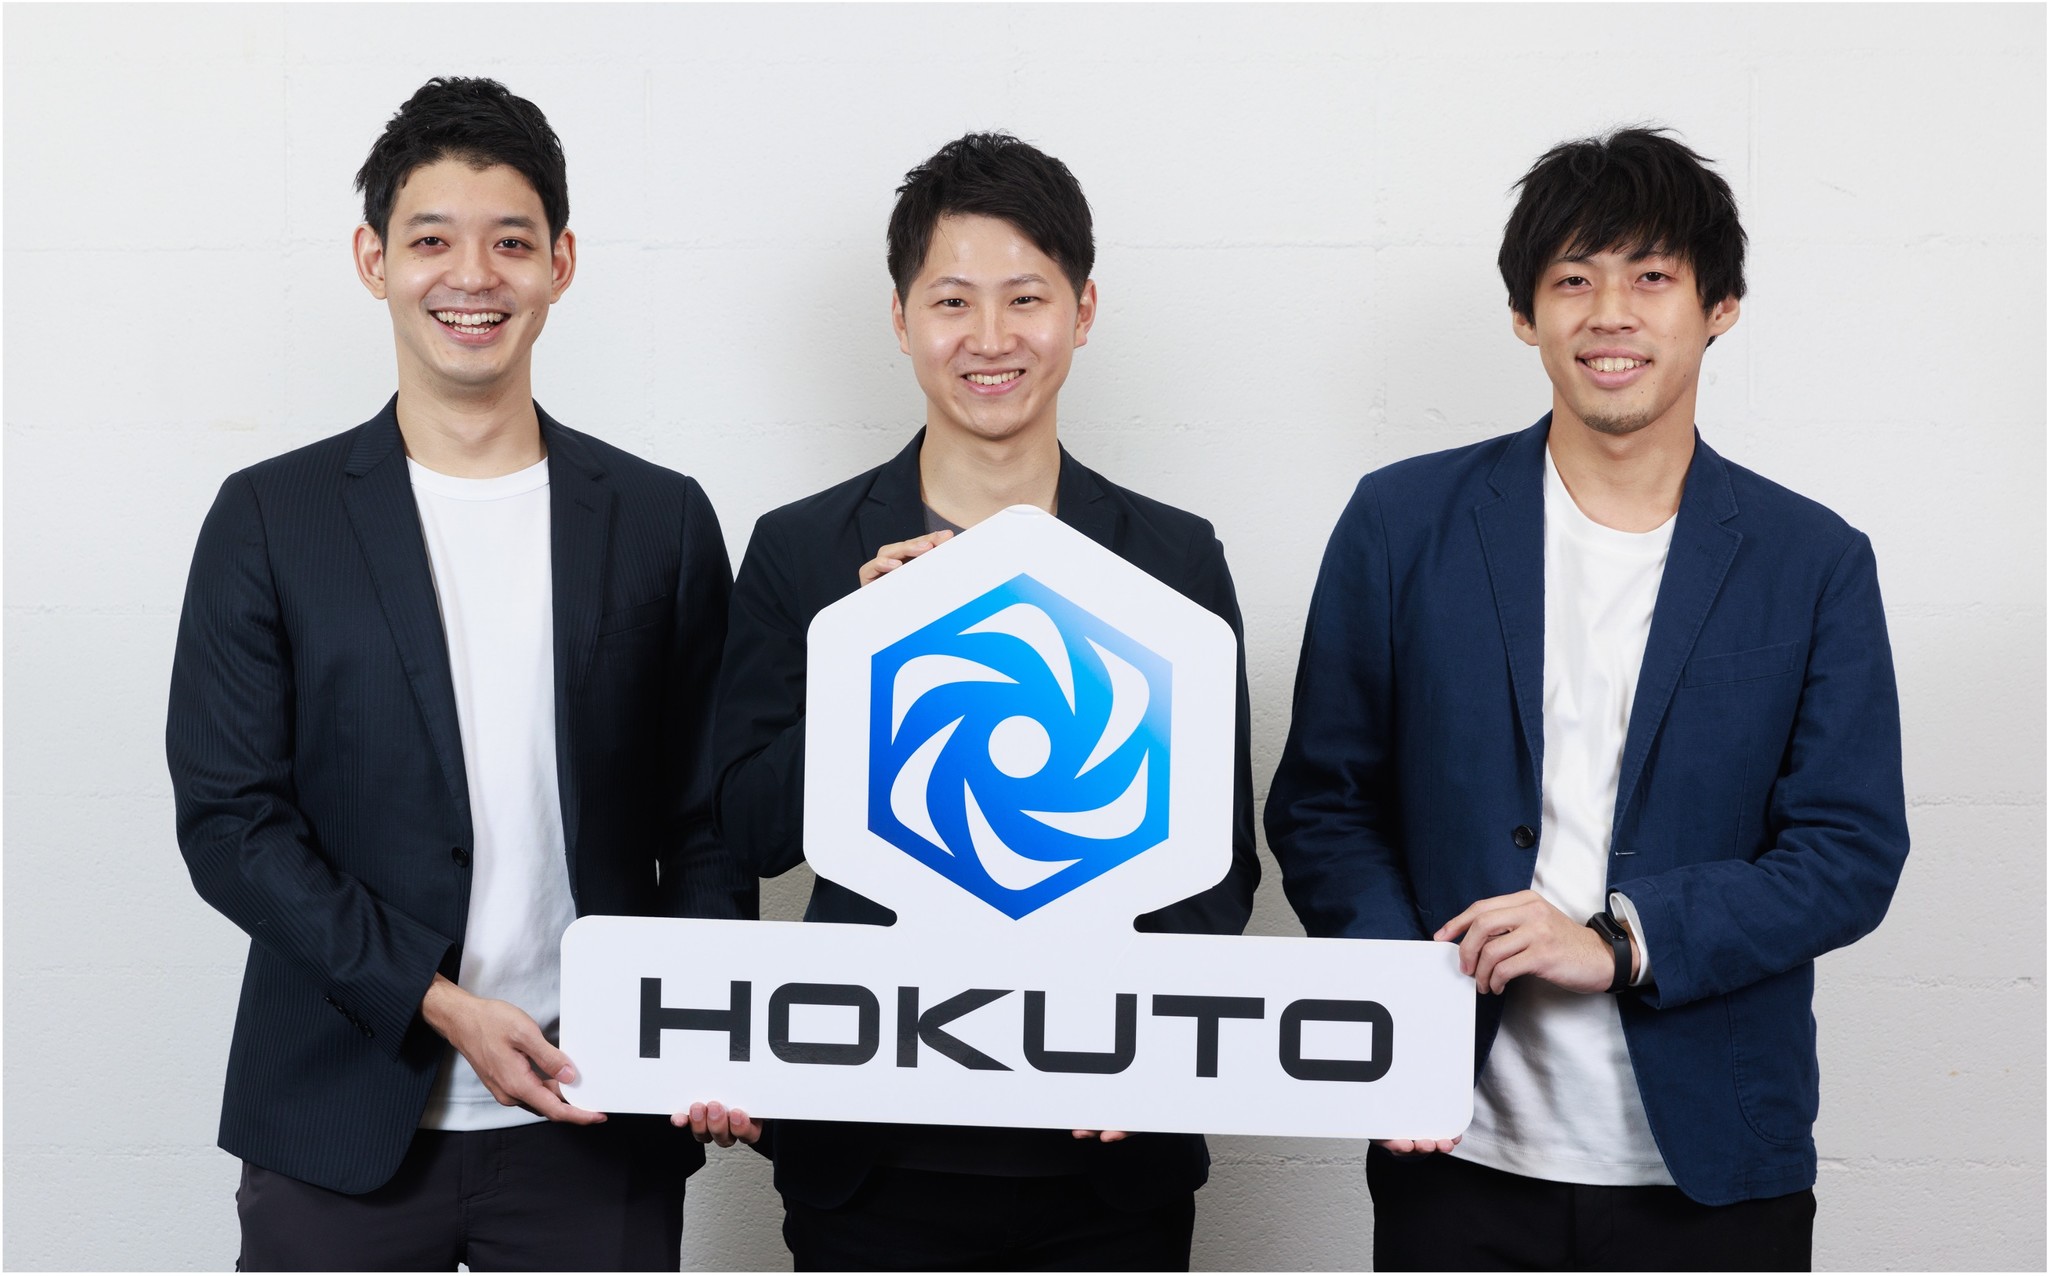 医師向け臨床支援アプリを提供する株式会社HOKUTOがシリーズAラウンドにて8.25億円の資金調達を実施